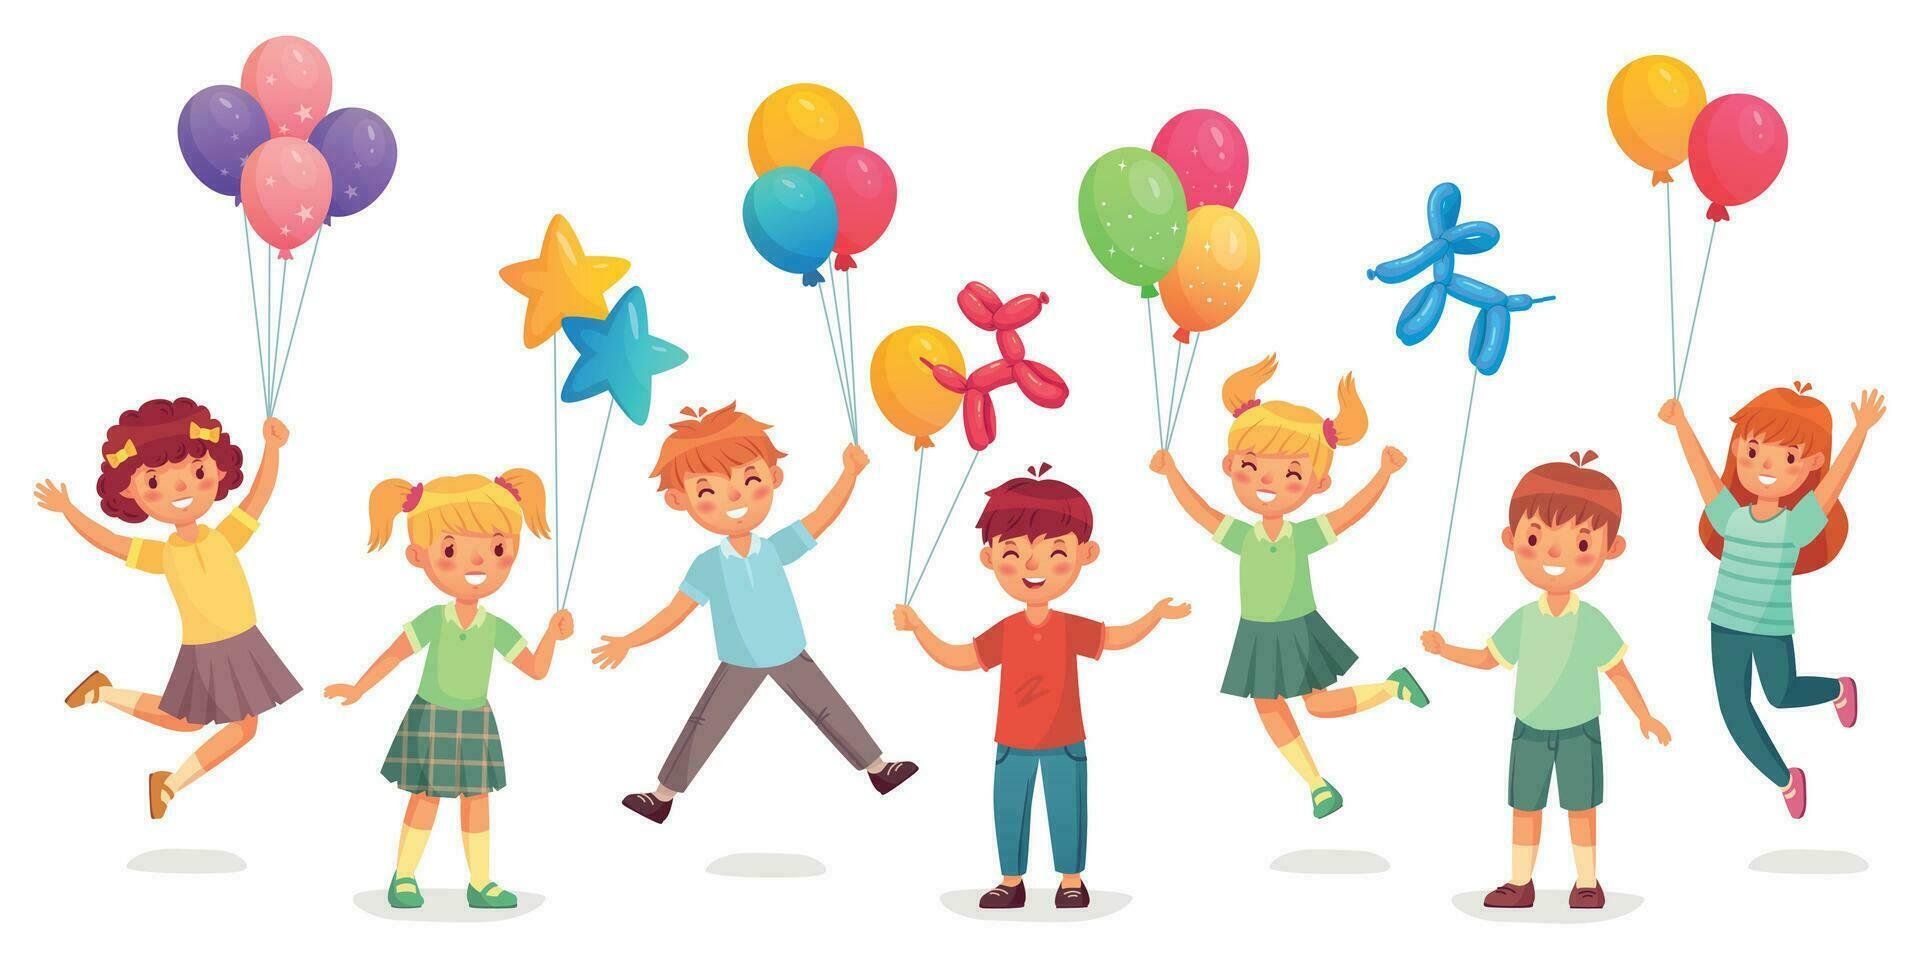 kinderen met ballonnen. gelukkig kinderen jumping en Holding ballonnen van verschillend vormen net zo hond en ster en maat. vector